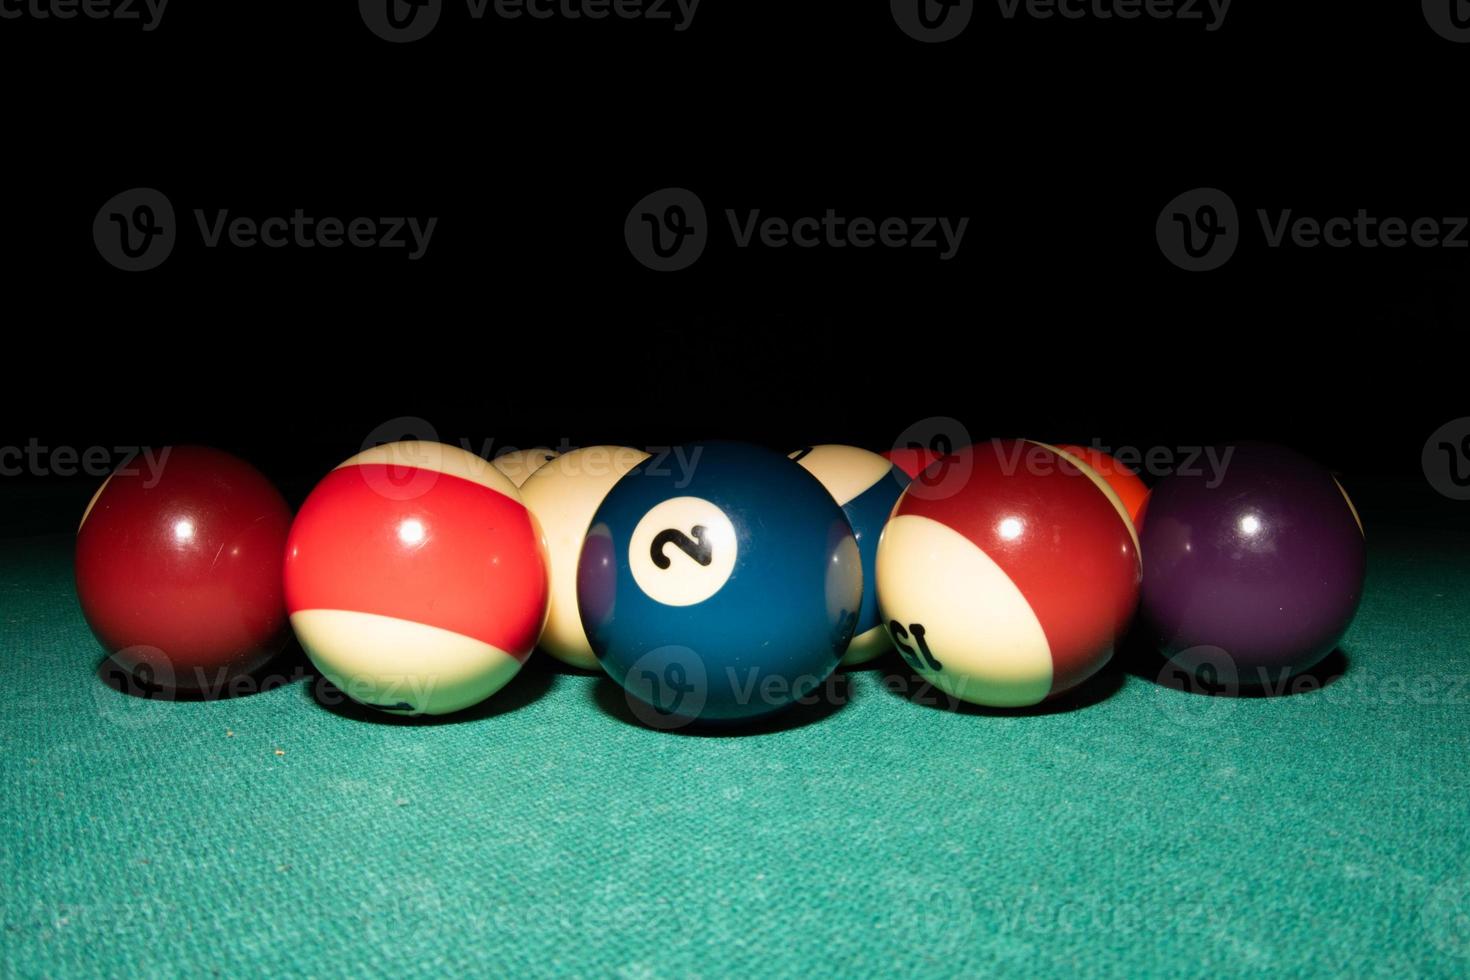 Pool-Billard-Tisch mit acht Bällen foto